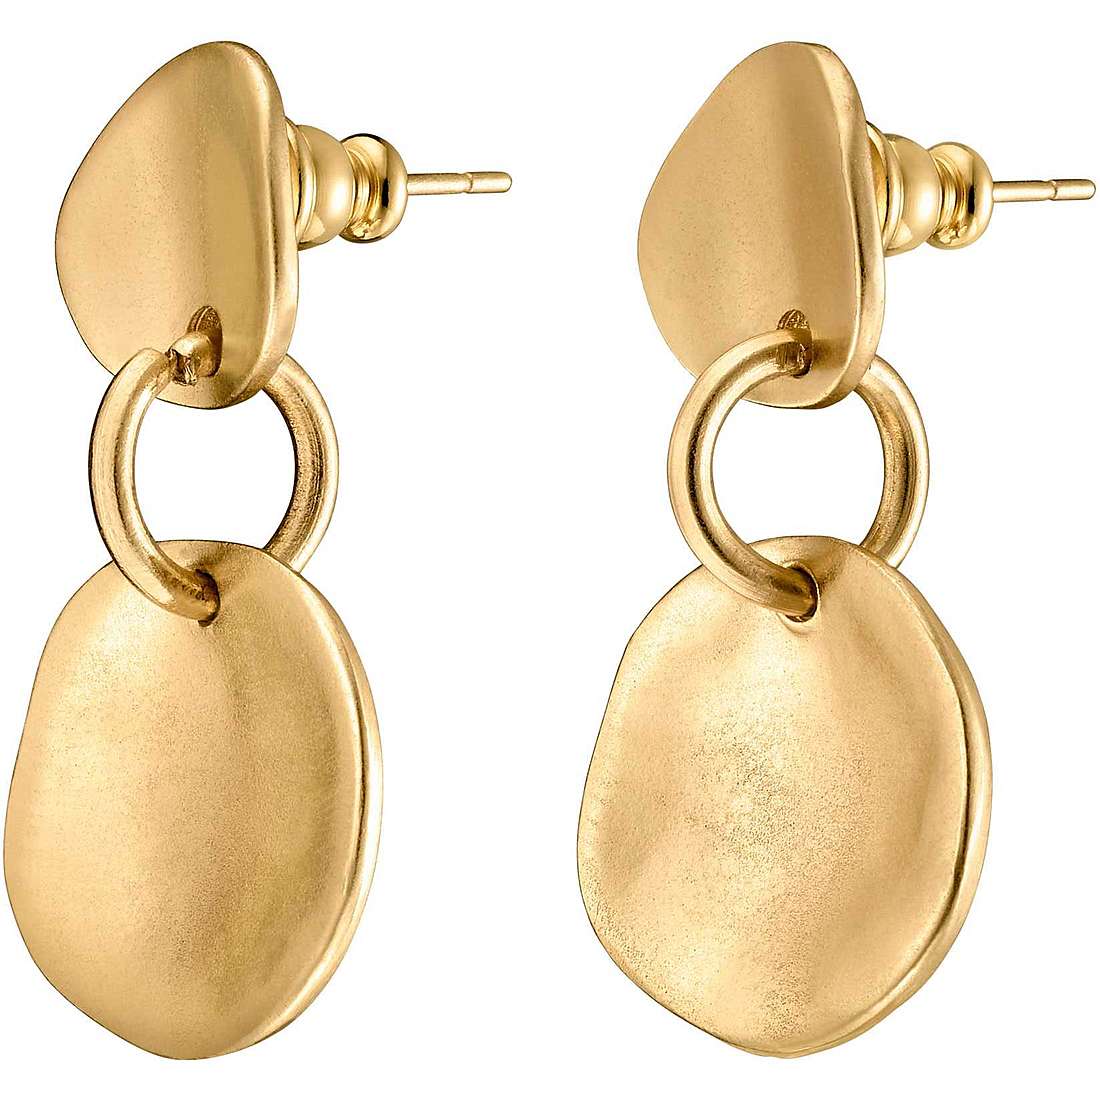 SCALES EARRINGS, Metal earrings plated in 18k gold